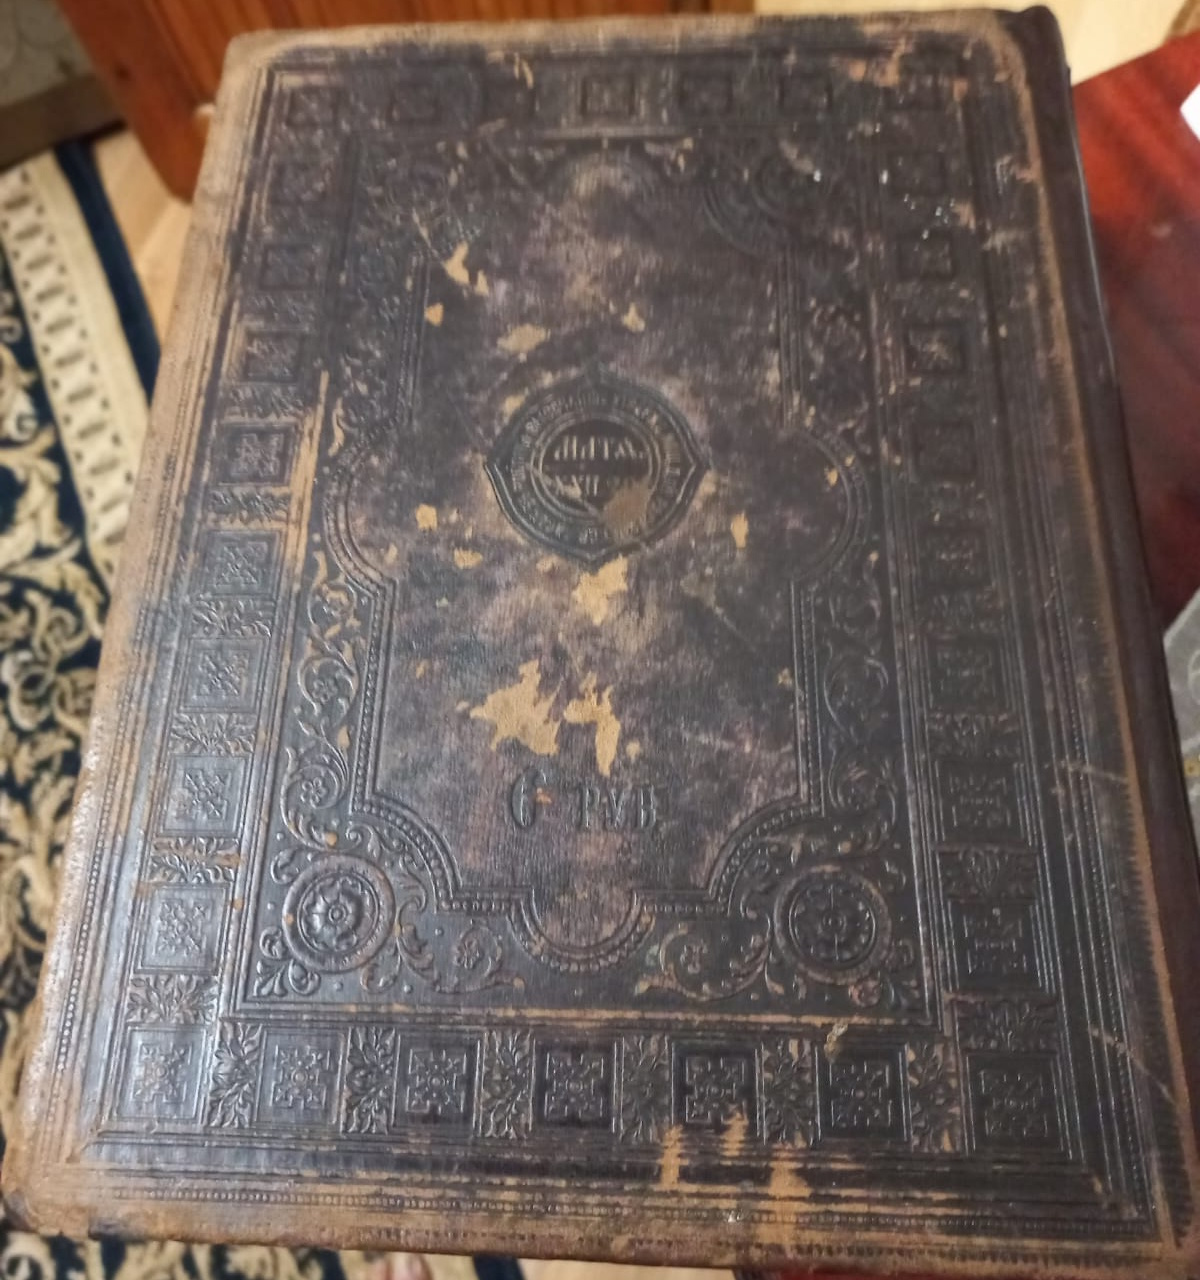 церковная книга Библия, большая, вес 5 кг, кожаный переплёт, 19 век фото 3